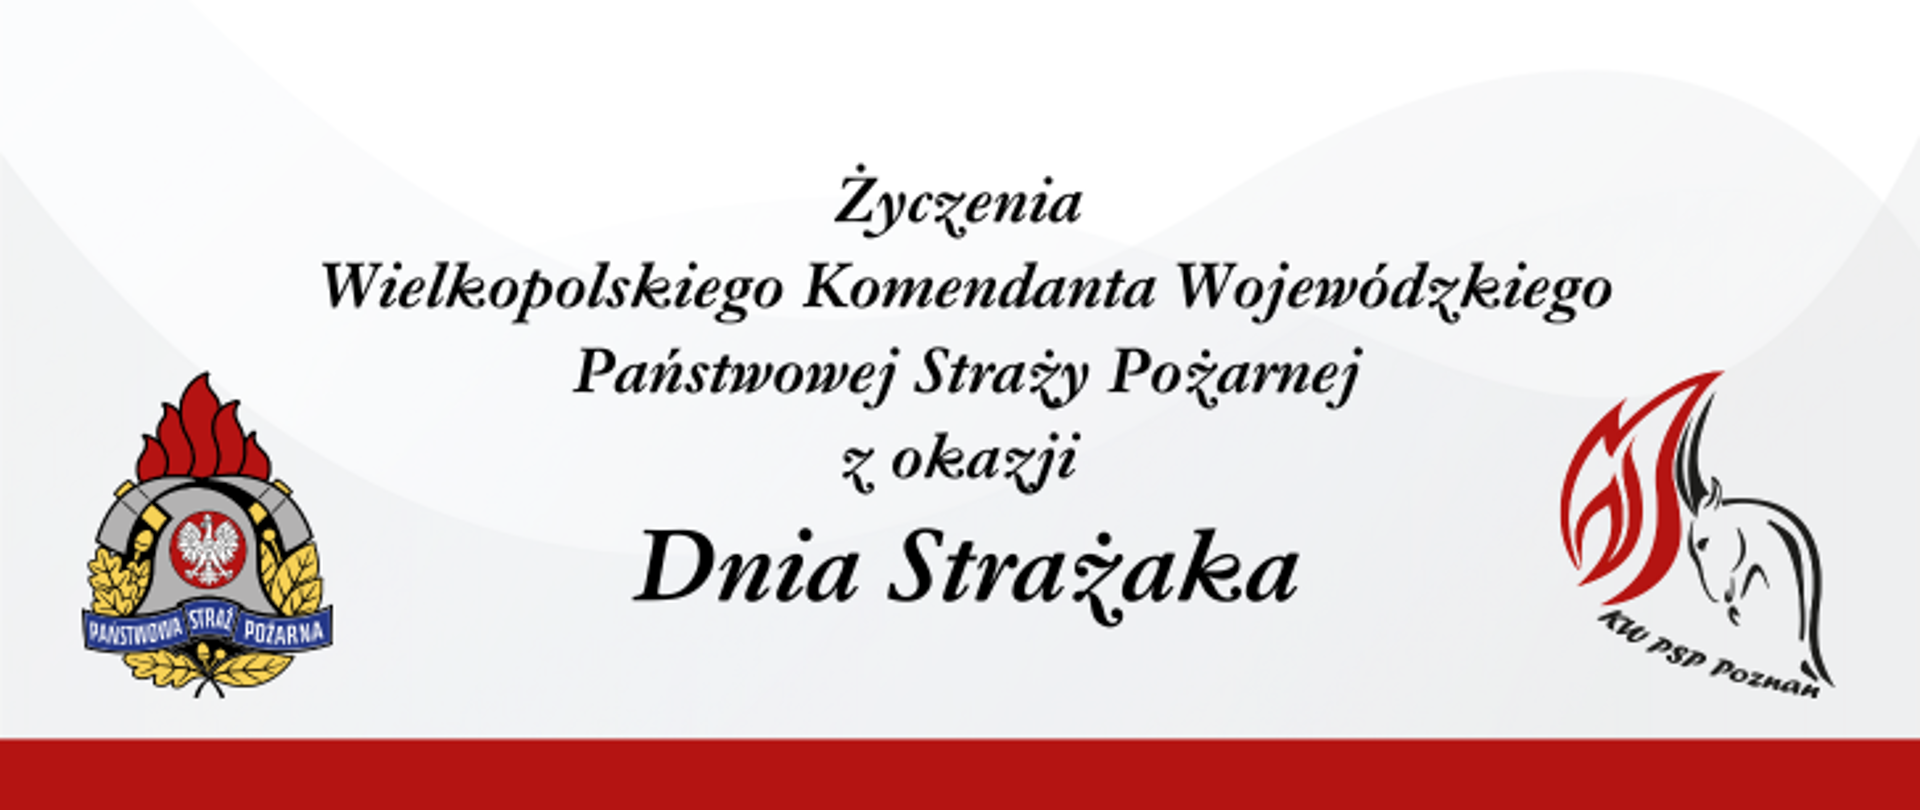 Życzenia Wielkopolskiego Komendanta Wojewódzkiego PSP wraz z kadrą kierowniczą Komendy Wojewódzkiej PSP w Poznaniu z okazji Dnia Strażaka 2023